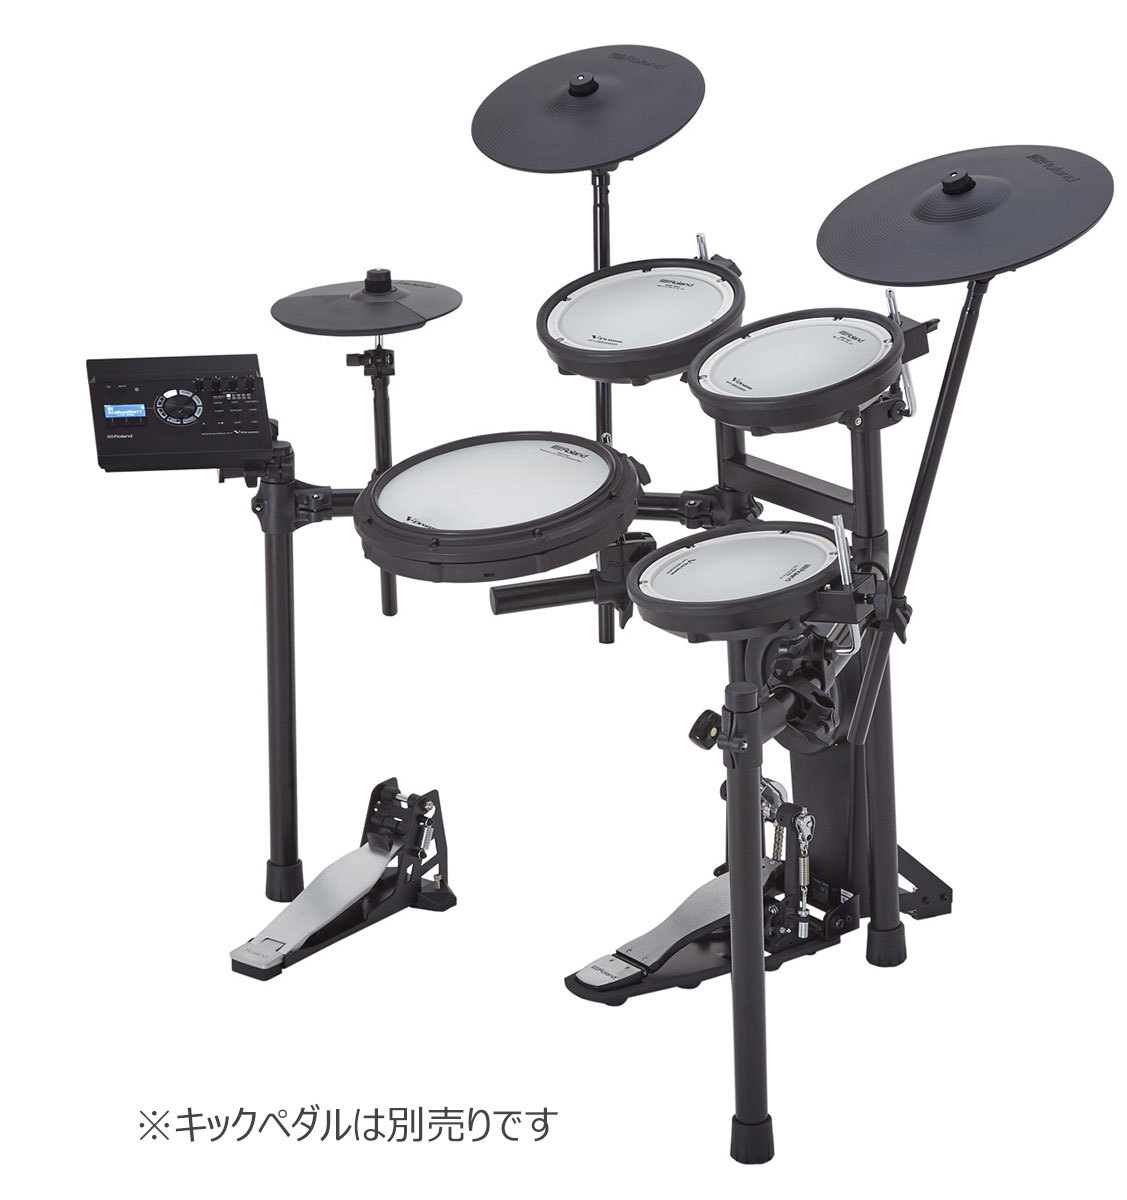 【稼動品】Roland V-Drums 電子ドラム セット TD-17